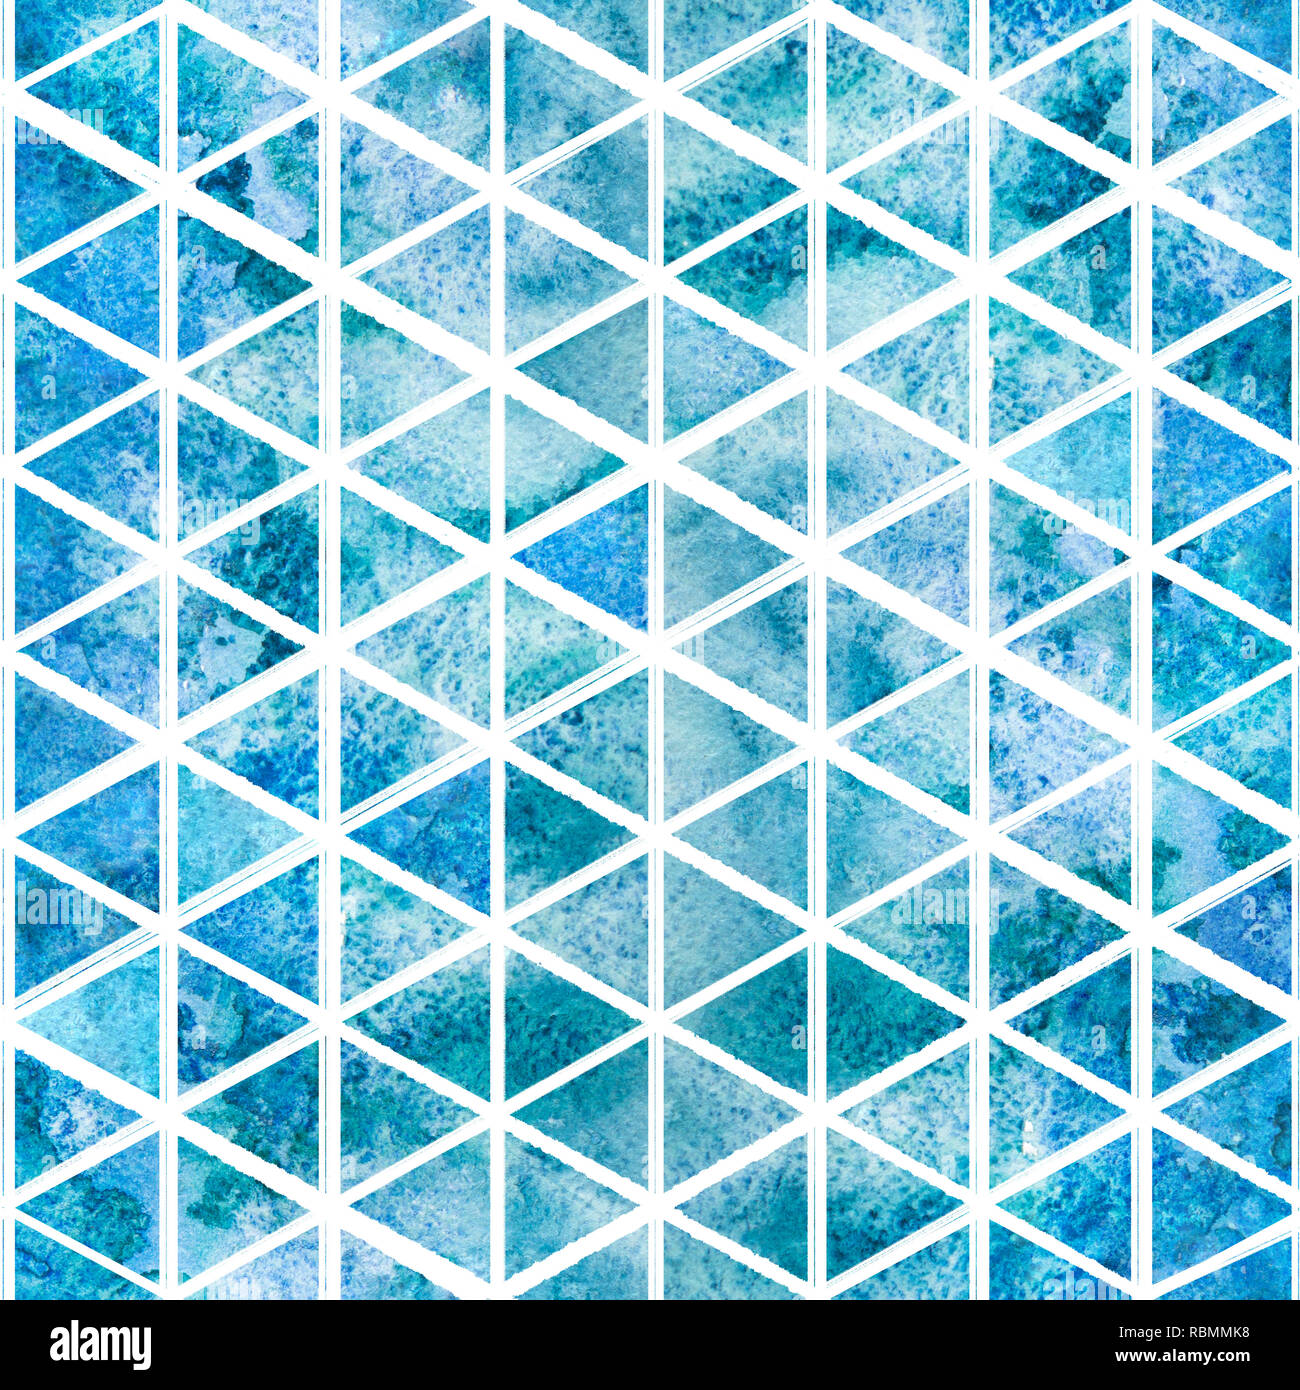 Aquarell Hintergrund. 2d Hand gezeichnet nahtlose Muster mit Licht blau grün dreieckige Mosaik. Marine bunten Ornament für Fliesen. Auf weiß Isoliert b Stockfoto